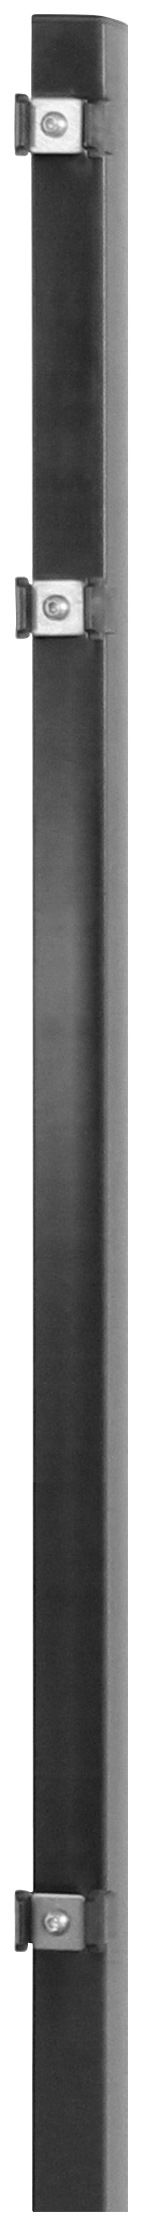 Arvotec Zaunpfosten "ESSENTIAL 120", 4x4x170 cm für Mattenhöhe 120 cm, zum günstig online kaufen